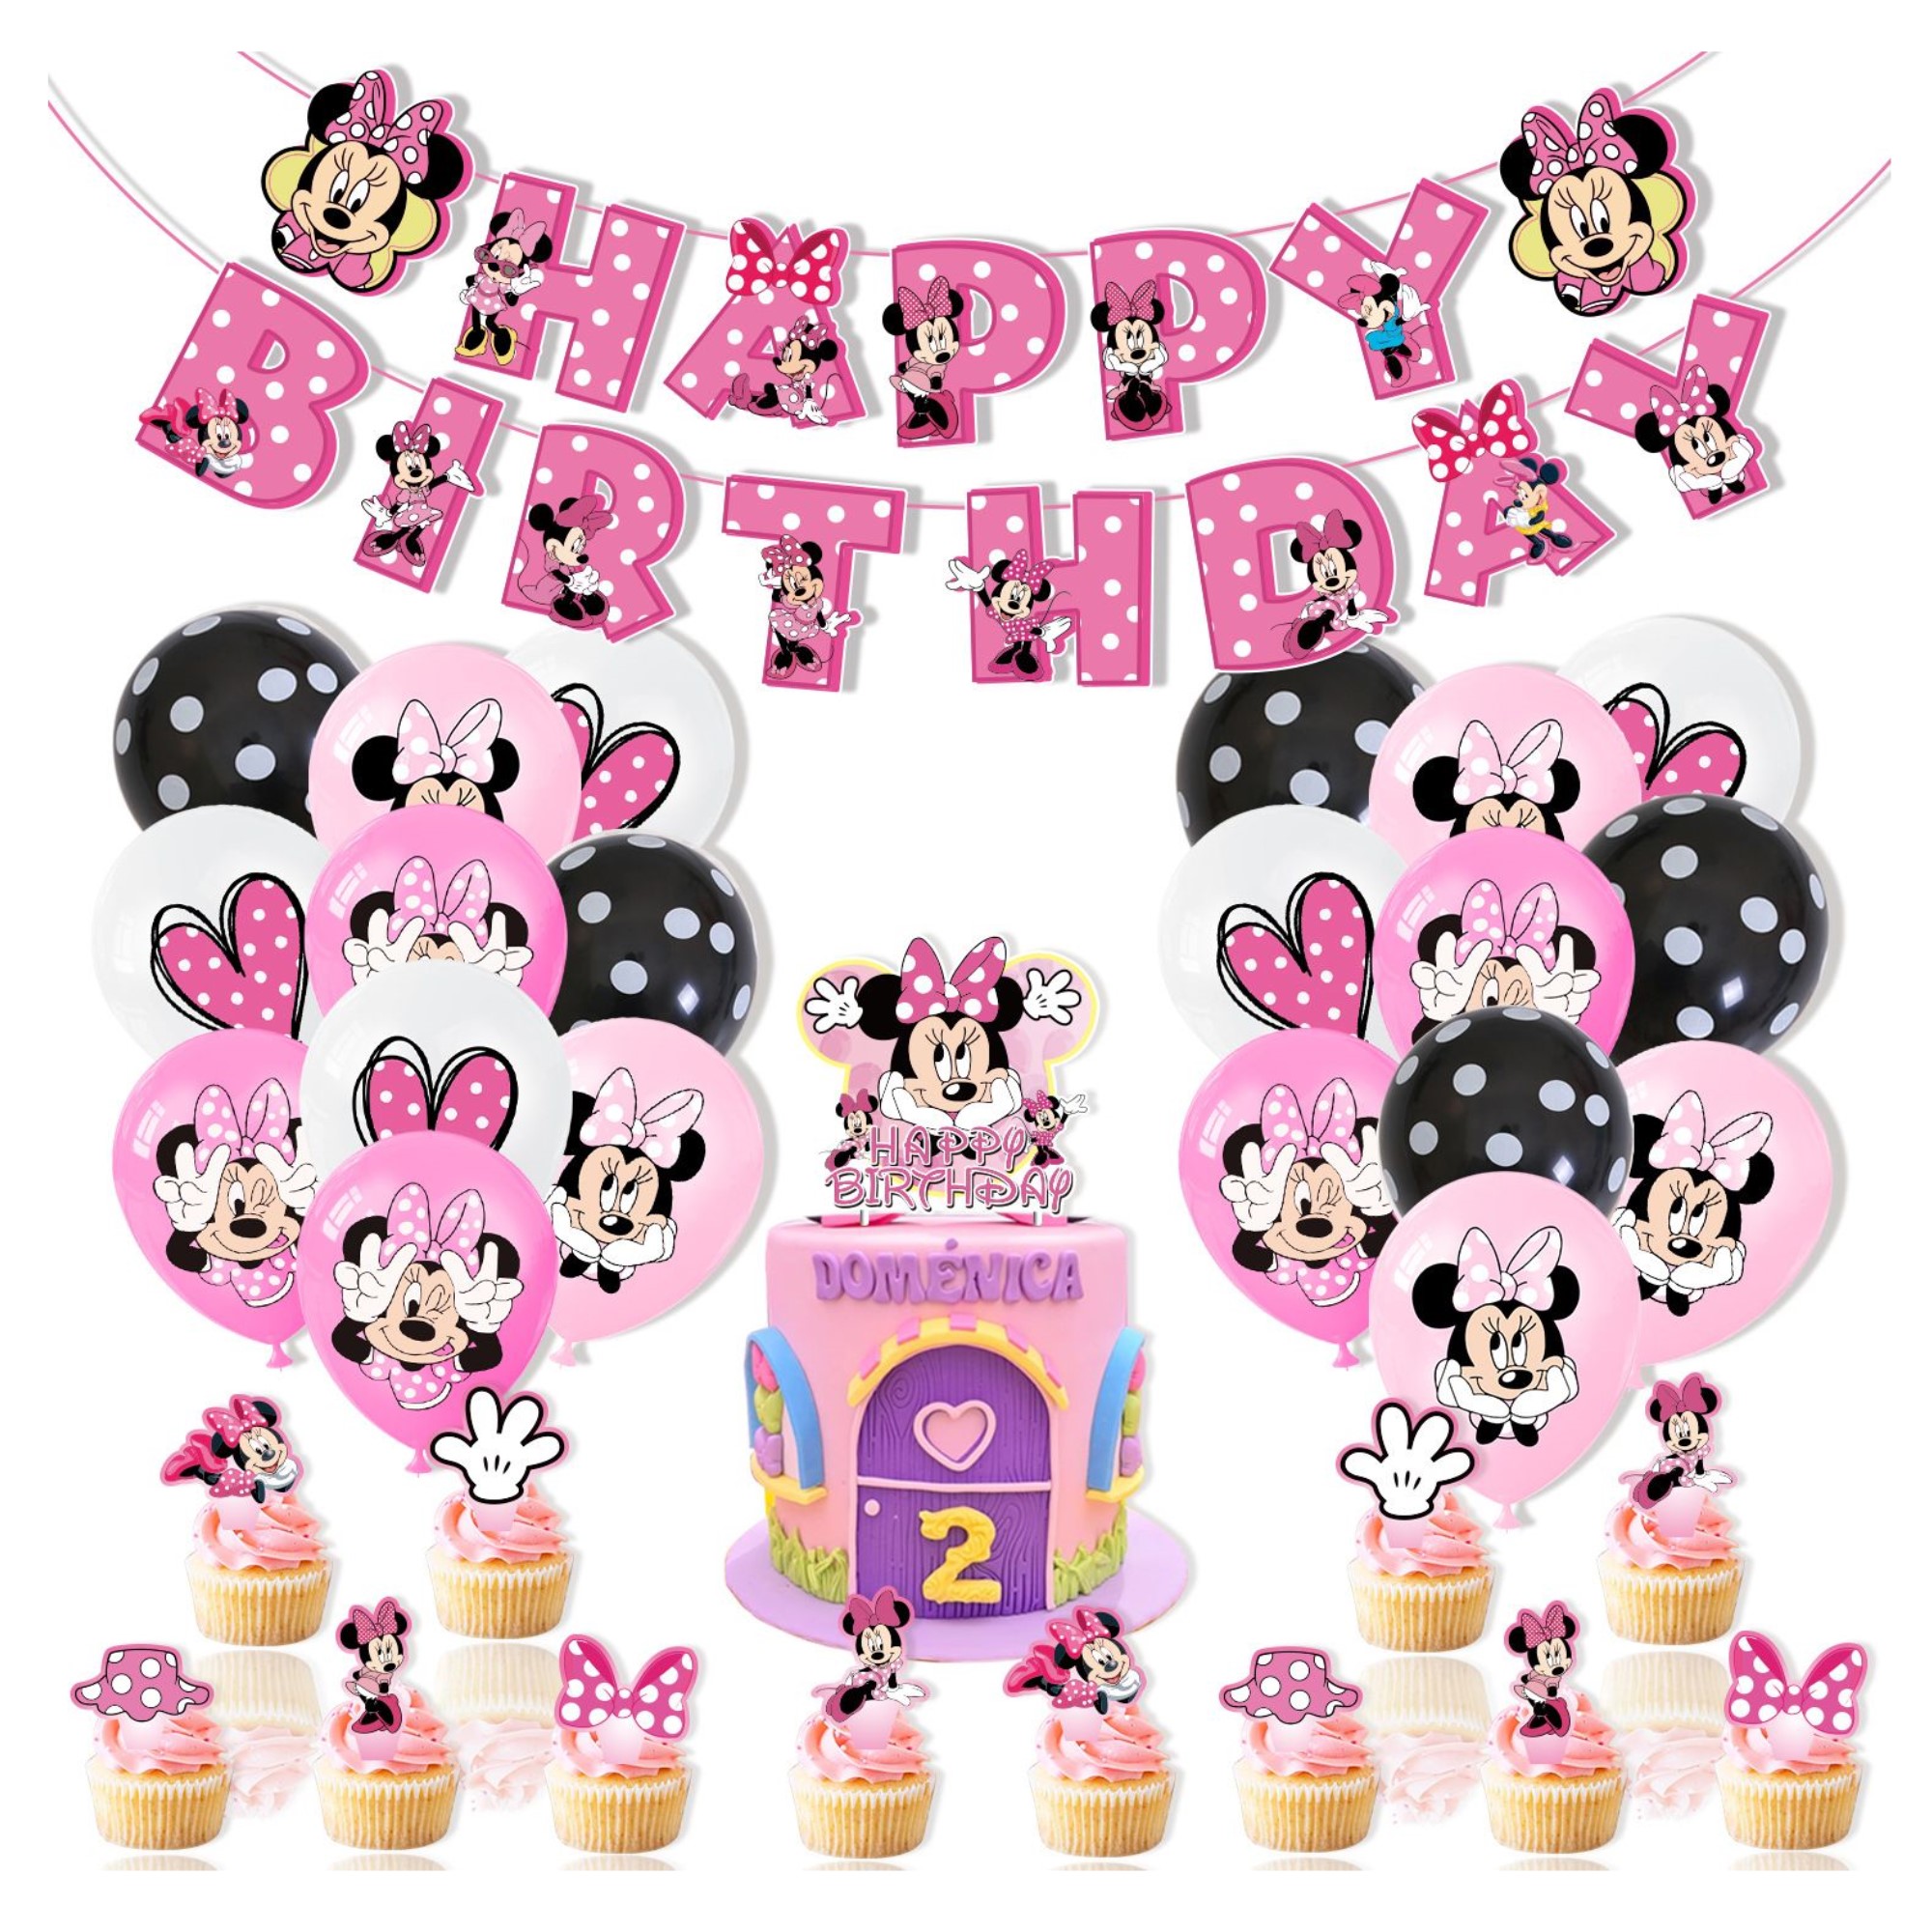 Globos de Cumpleaños Minnie 